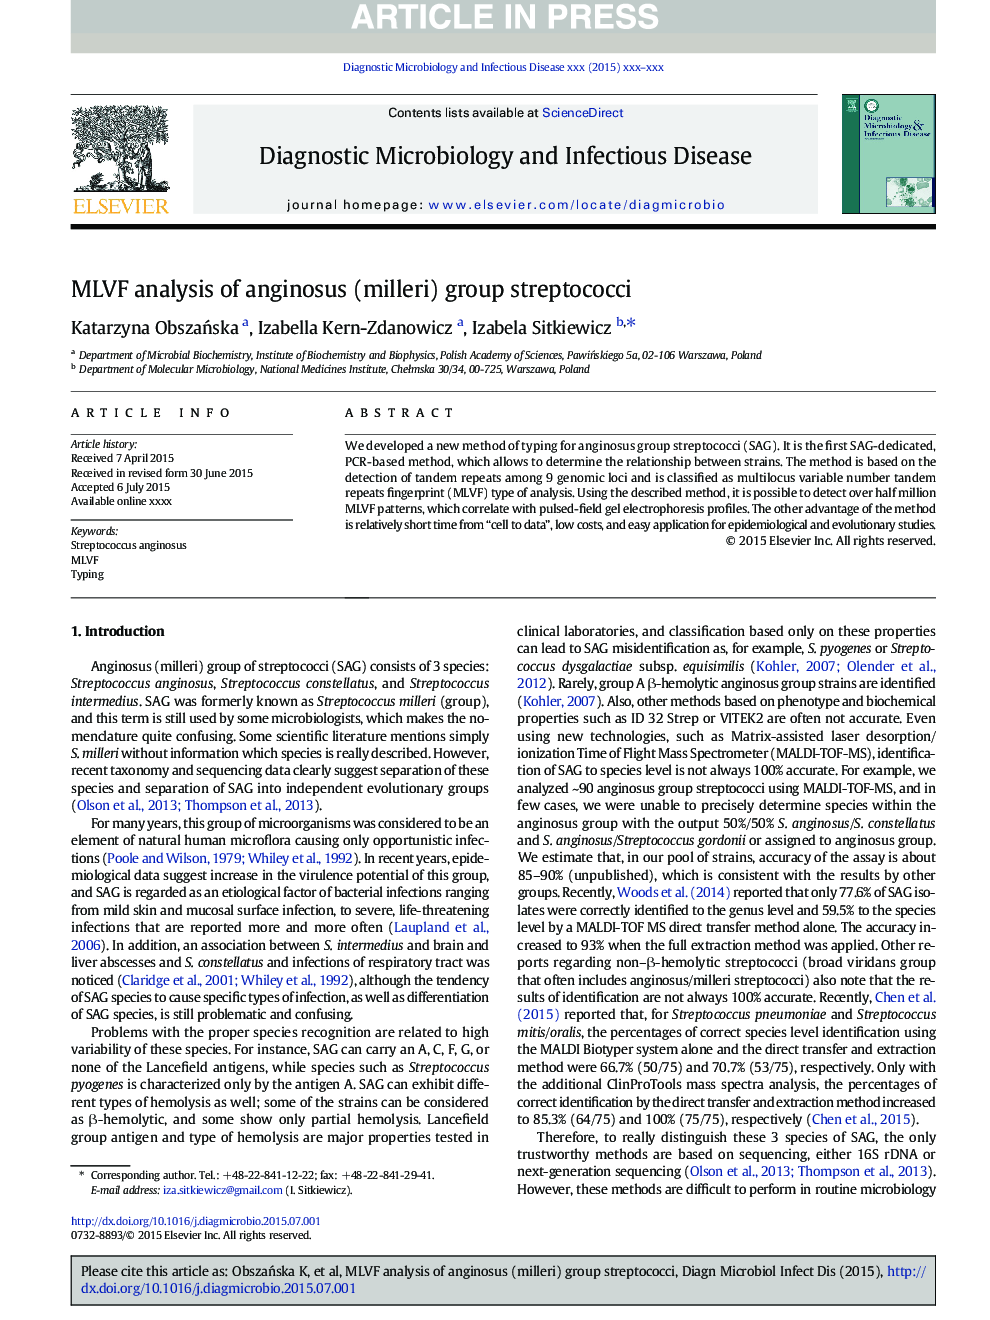 MLVF analysis of anginosus (milleri) group streptococci